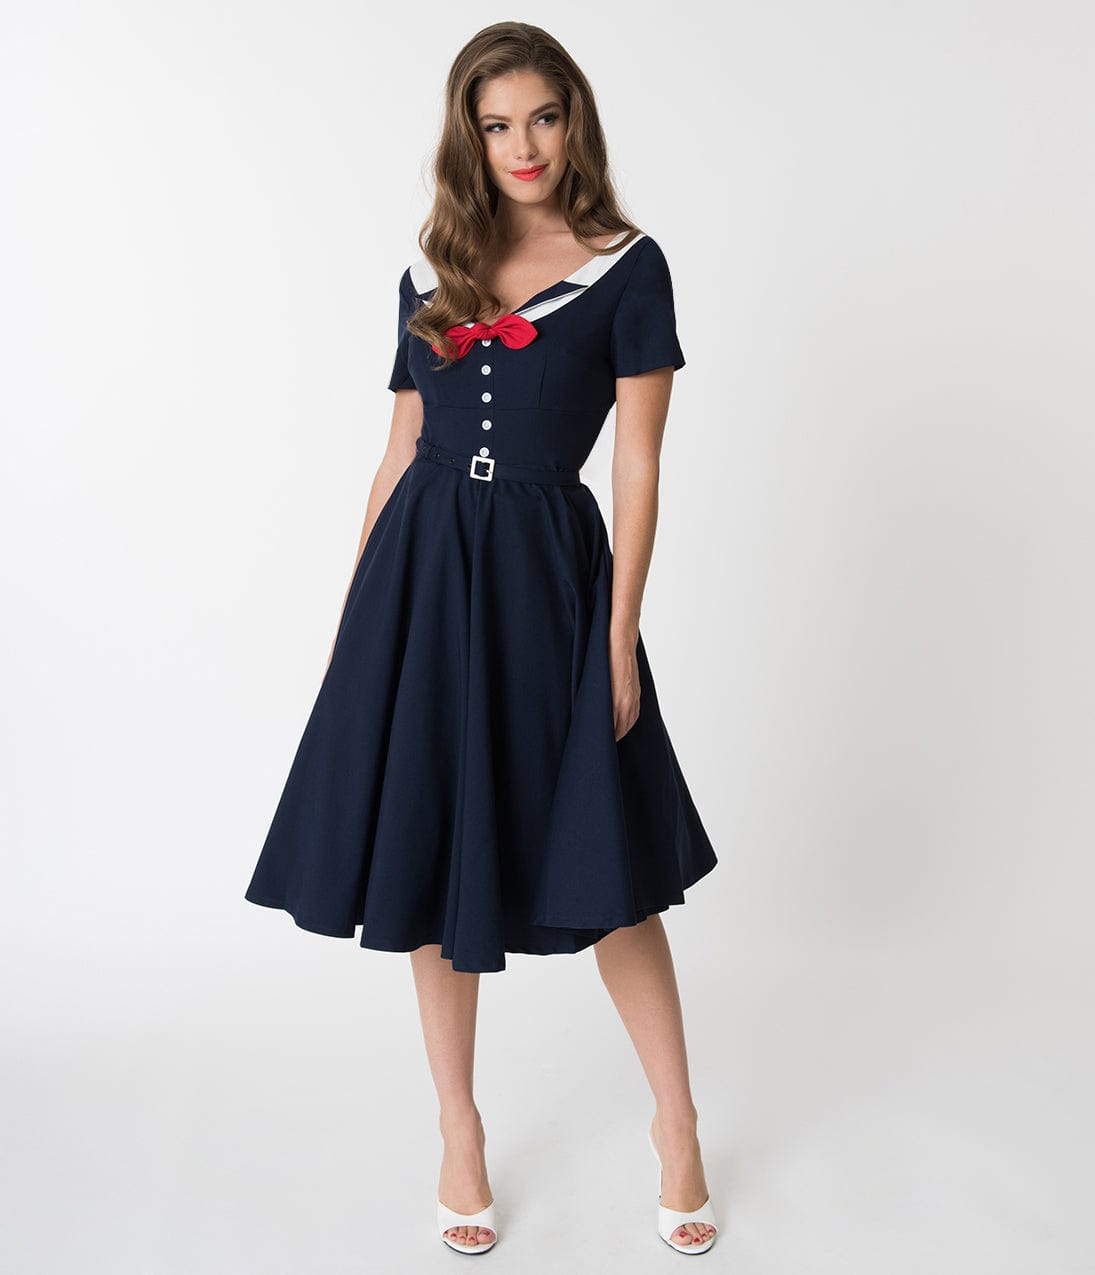 1940s fashion, British Utility dresses, WWII rationing